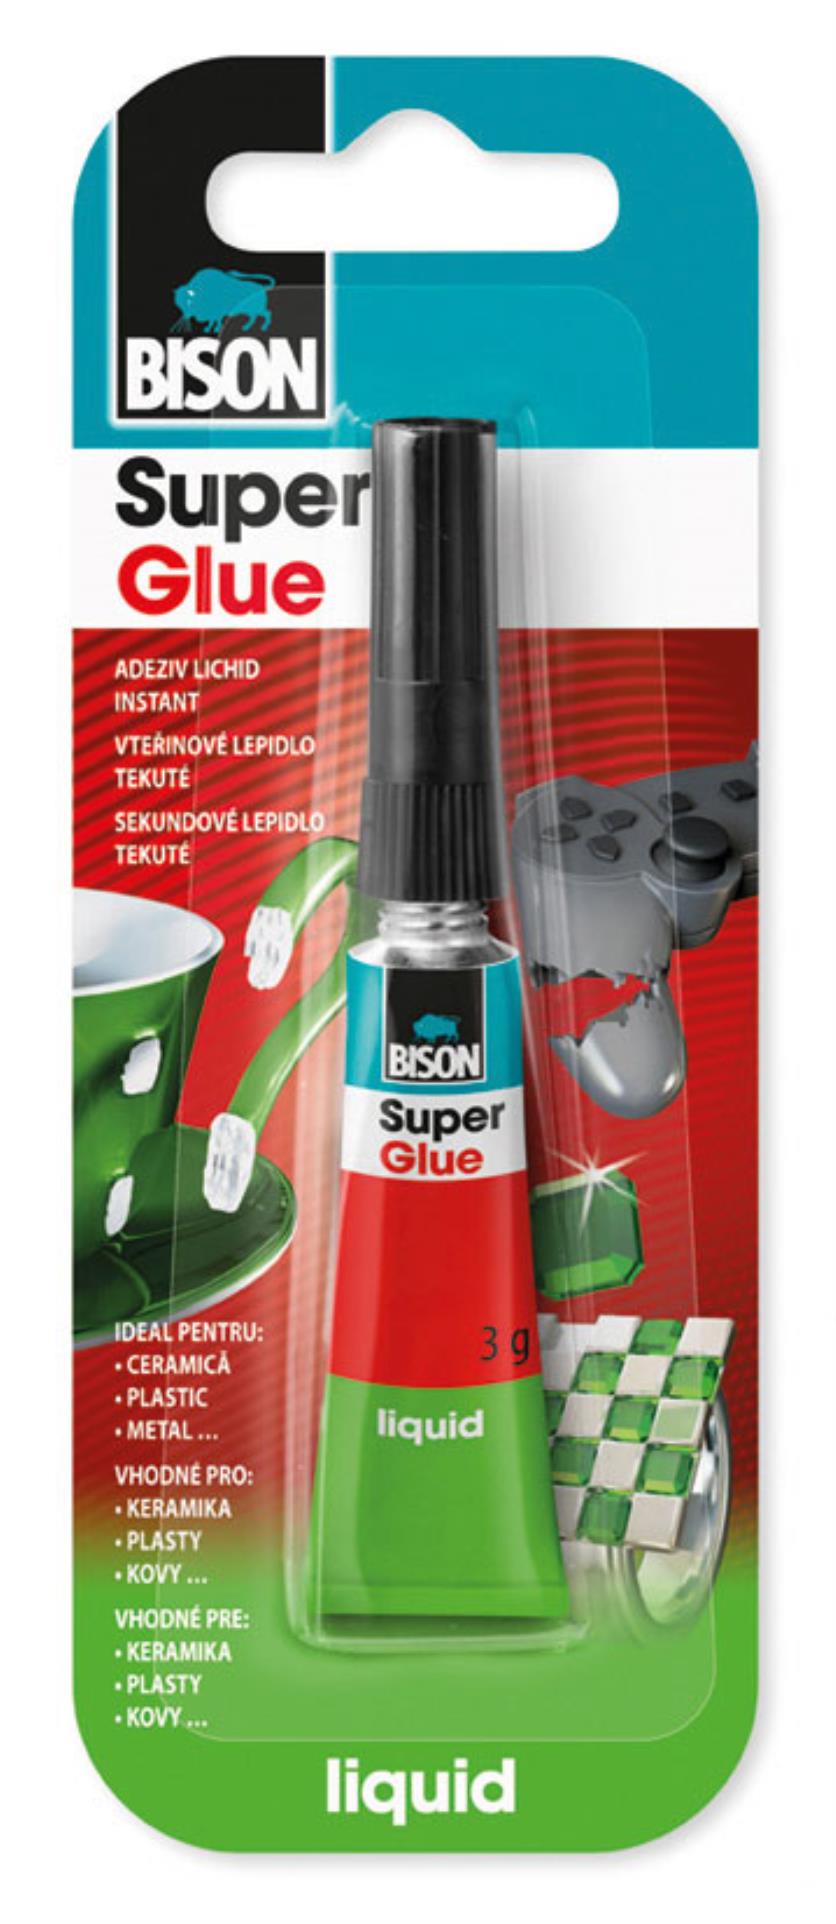 BISON Vteřinové lepidlo BISON Super Glue Liquid - 3g